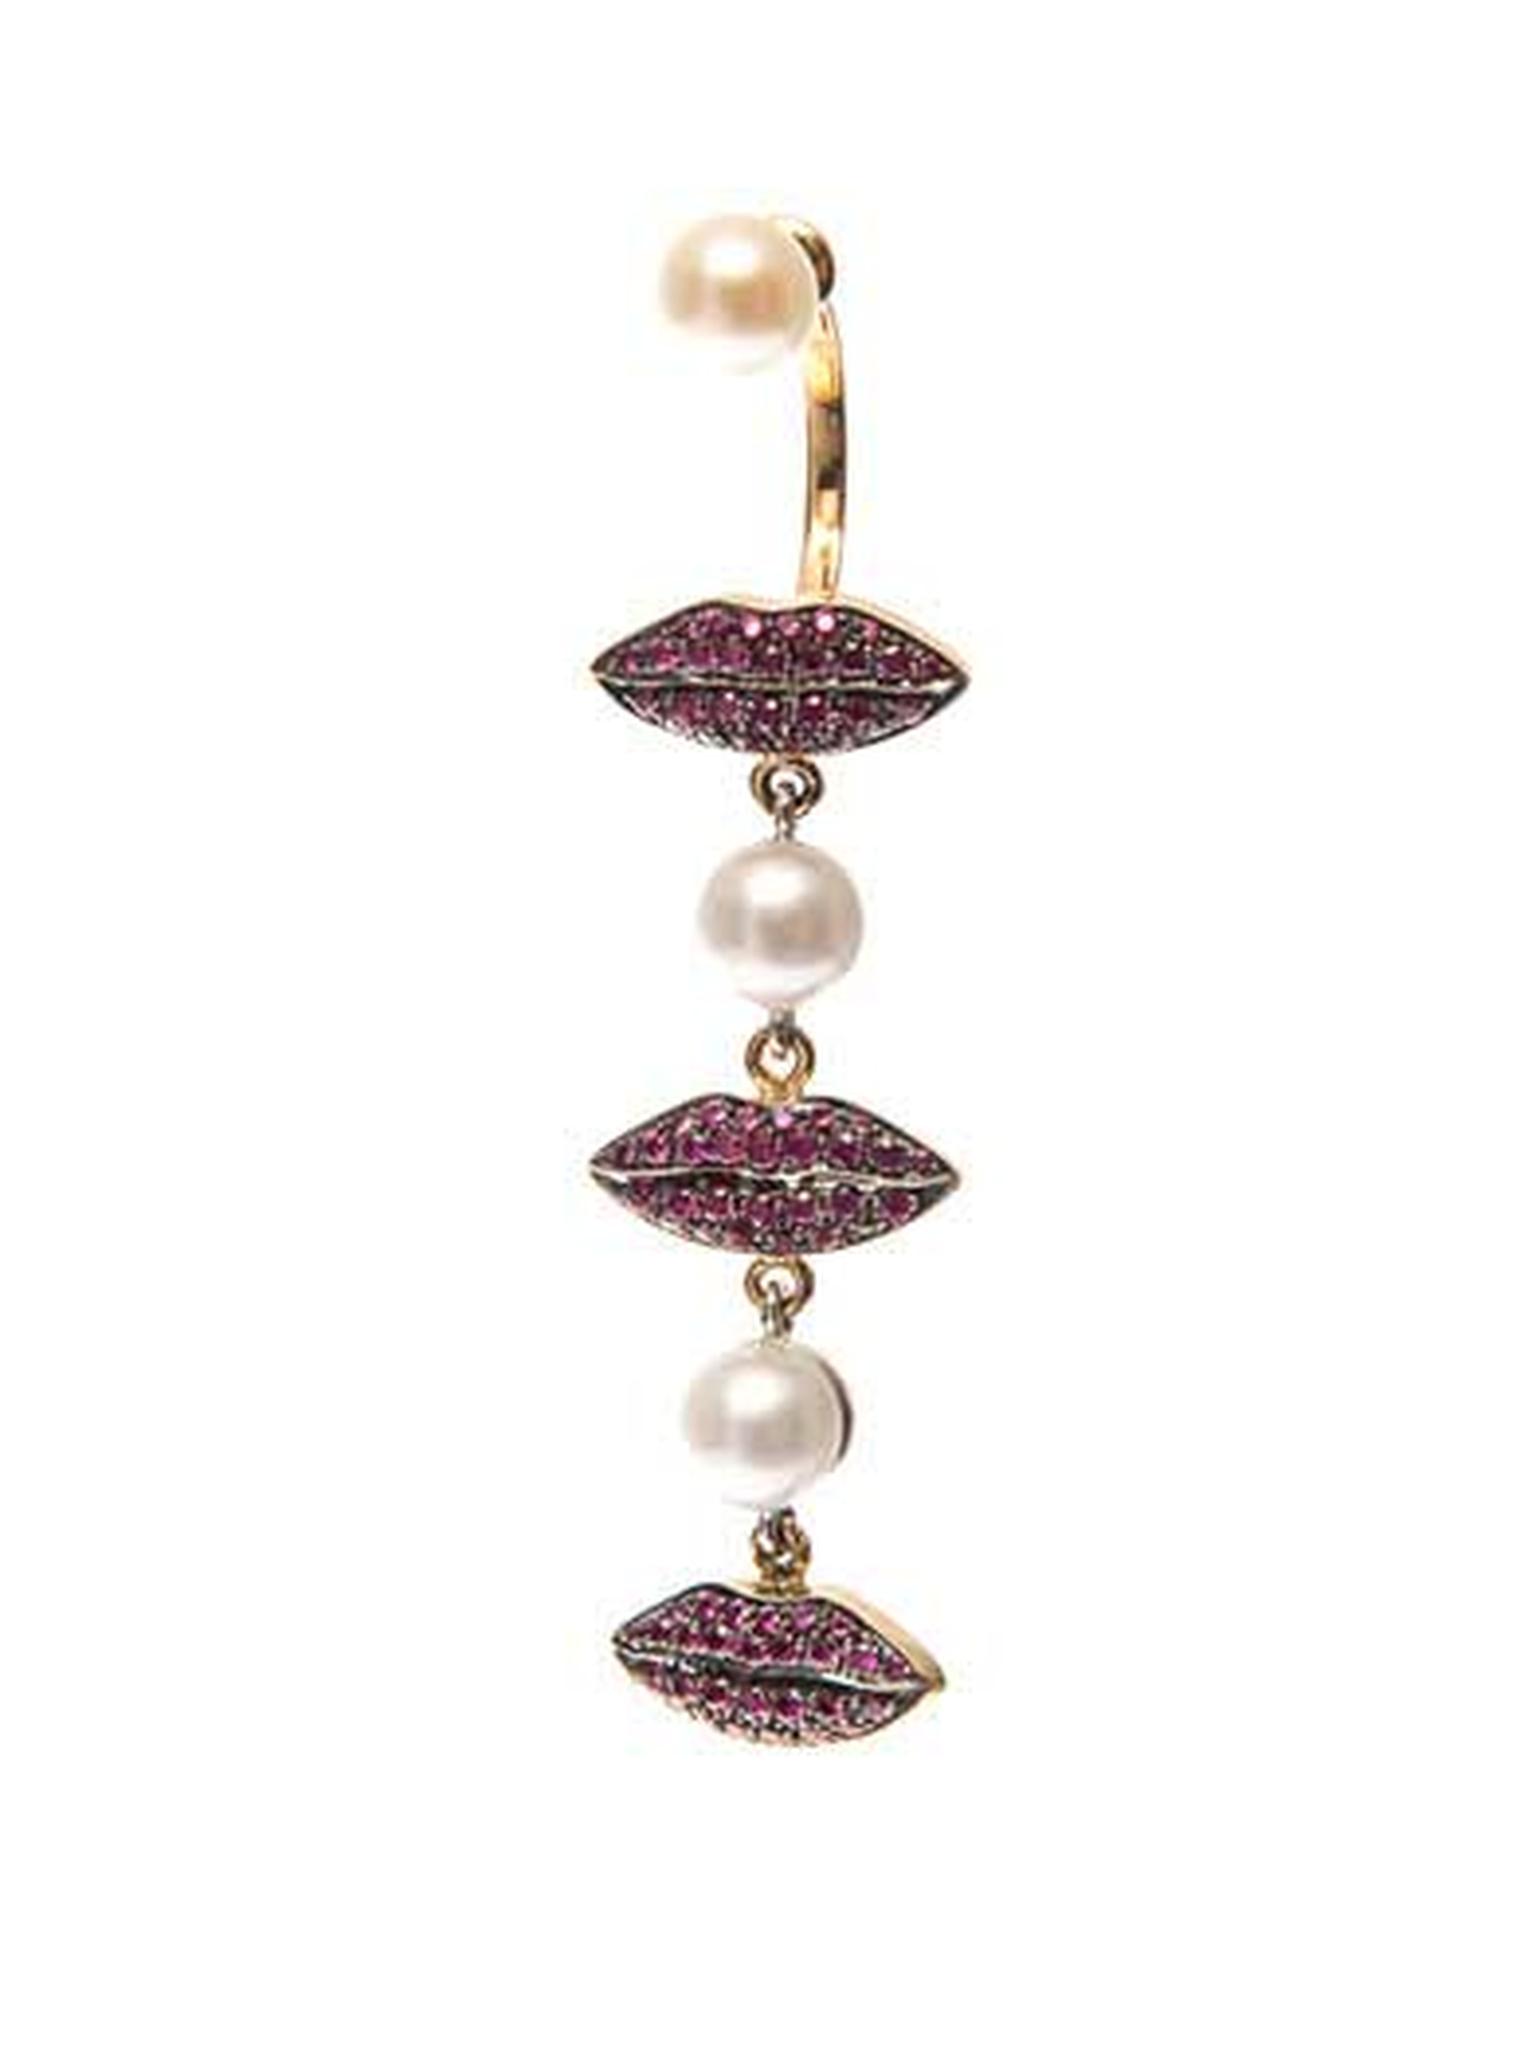 Delfina Delettrez pearl earring in gold with ruby lips (£3,665).